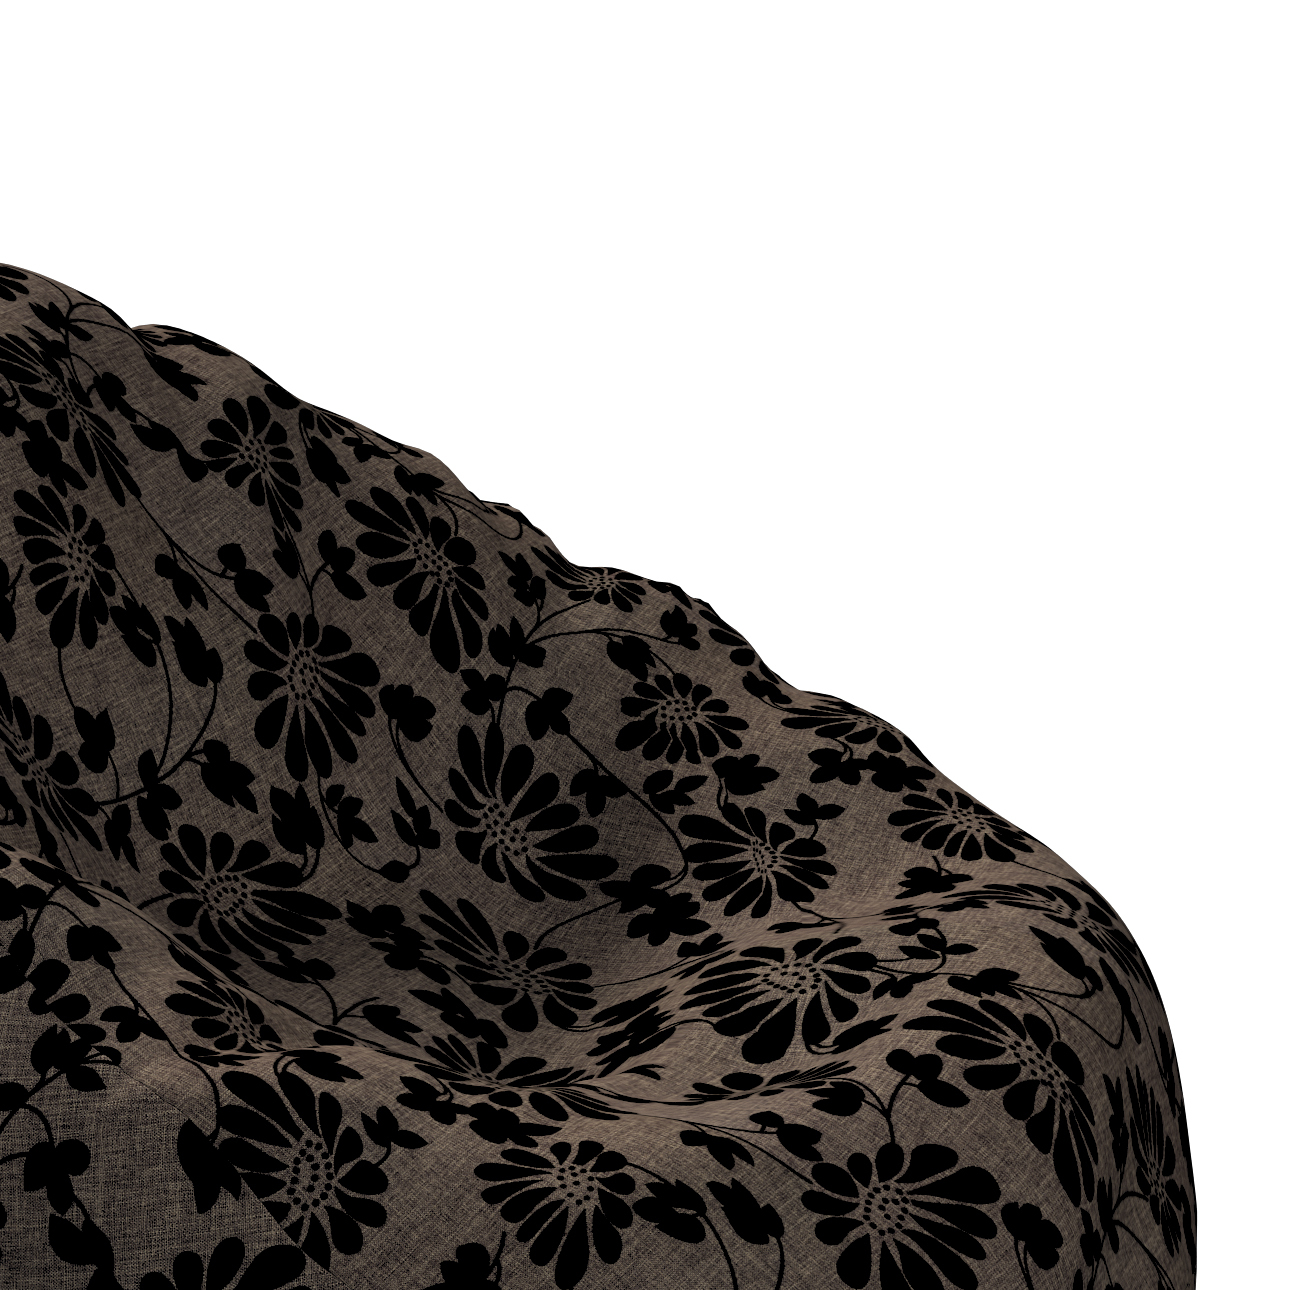 Bezug für Sitzsack, braun-schwarz, Bezug für Sitzsack Ø60 x 105 cm, Living günstig online kaufen